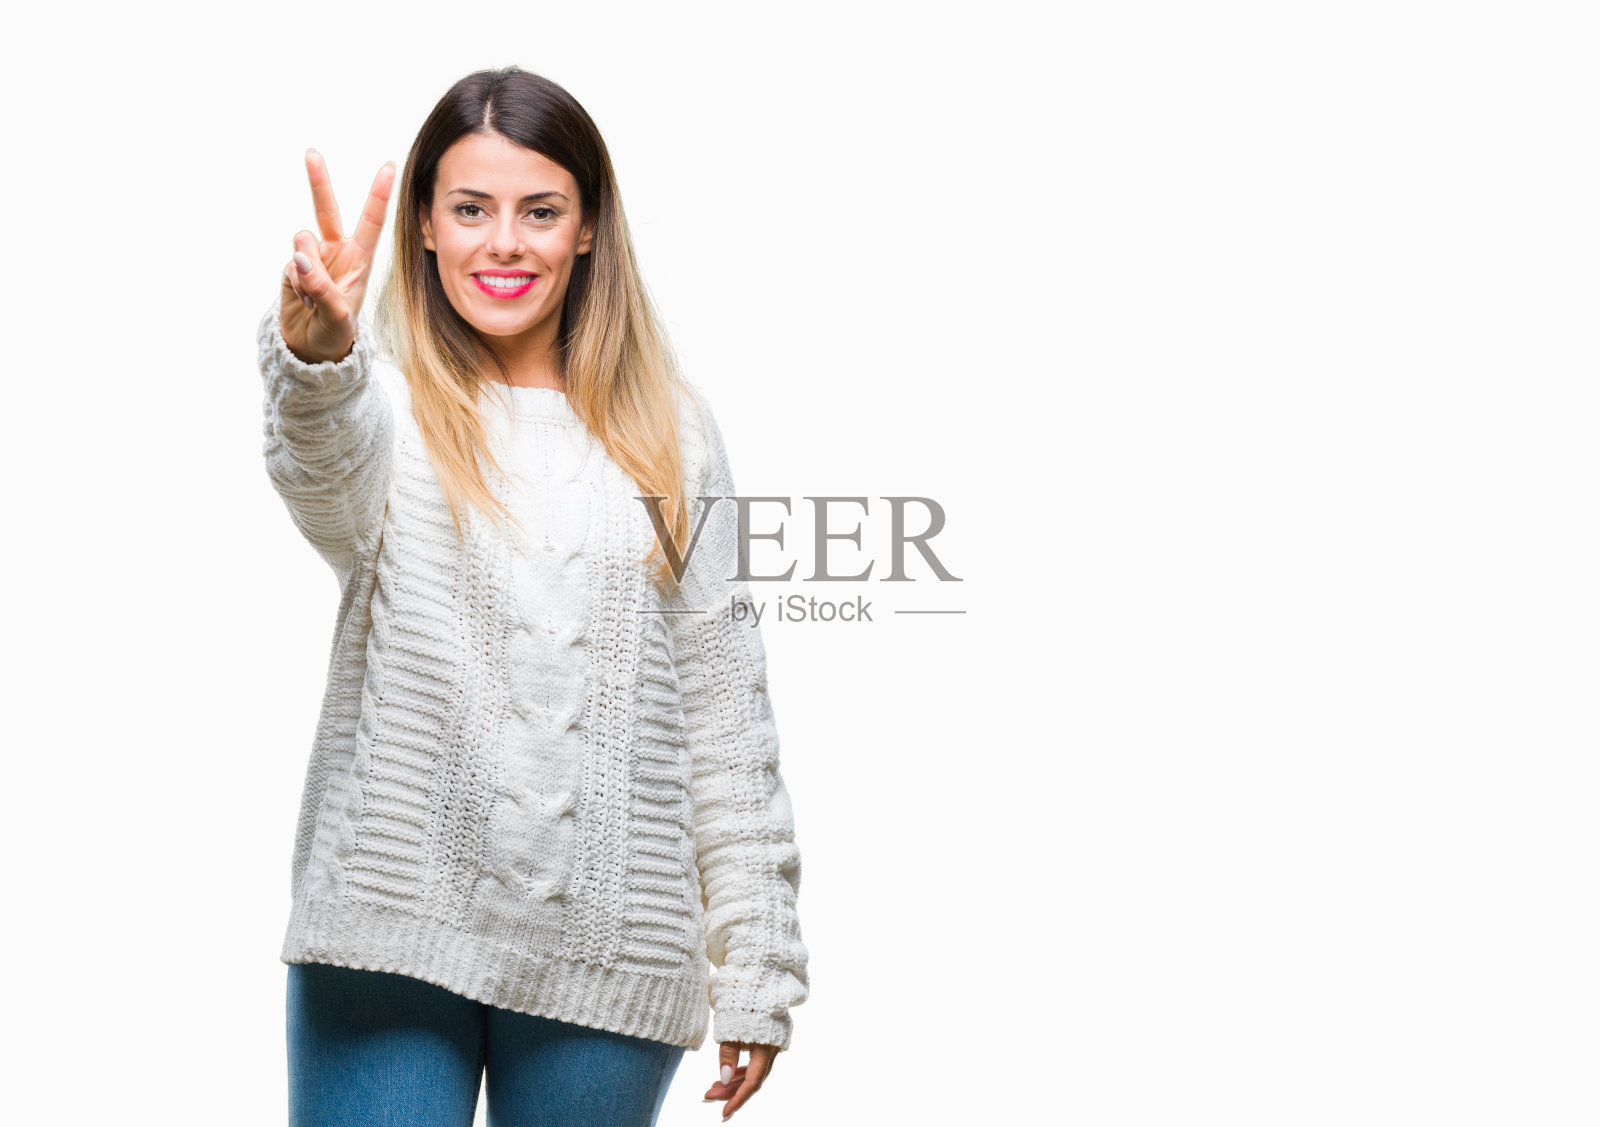 年轻美丽的女人休闲白色毛衣在孤立的背景显示和指向2个手指，而自信和快乐的微笑。照片摄影图片